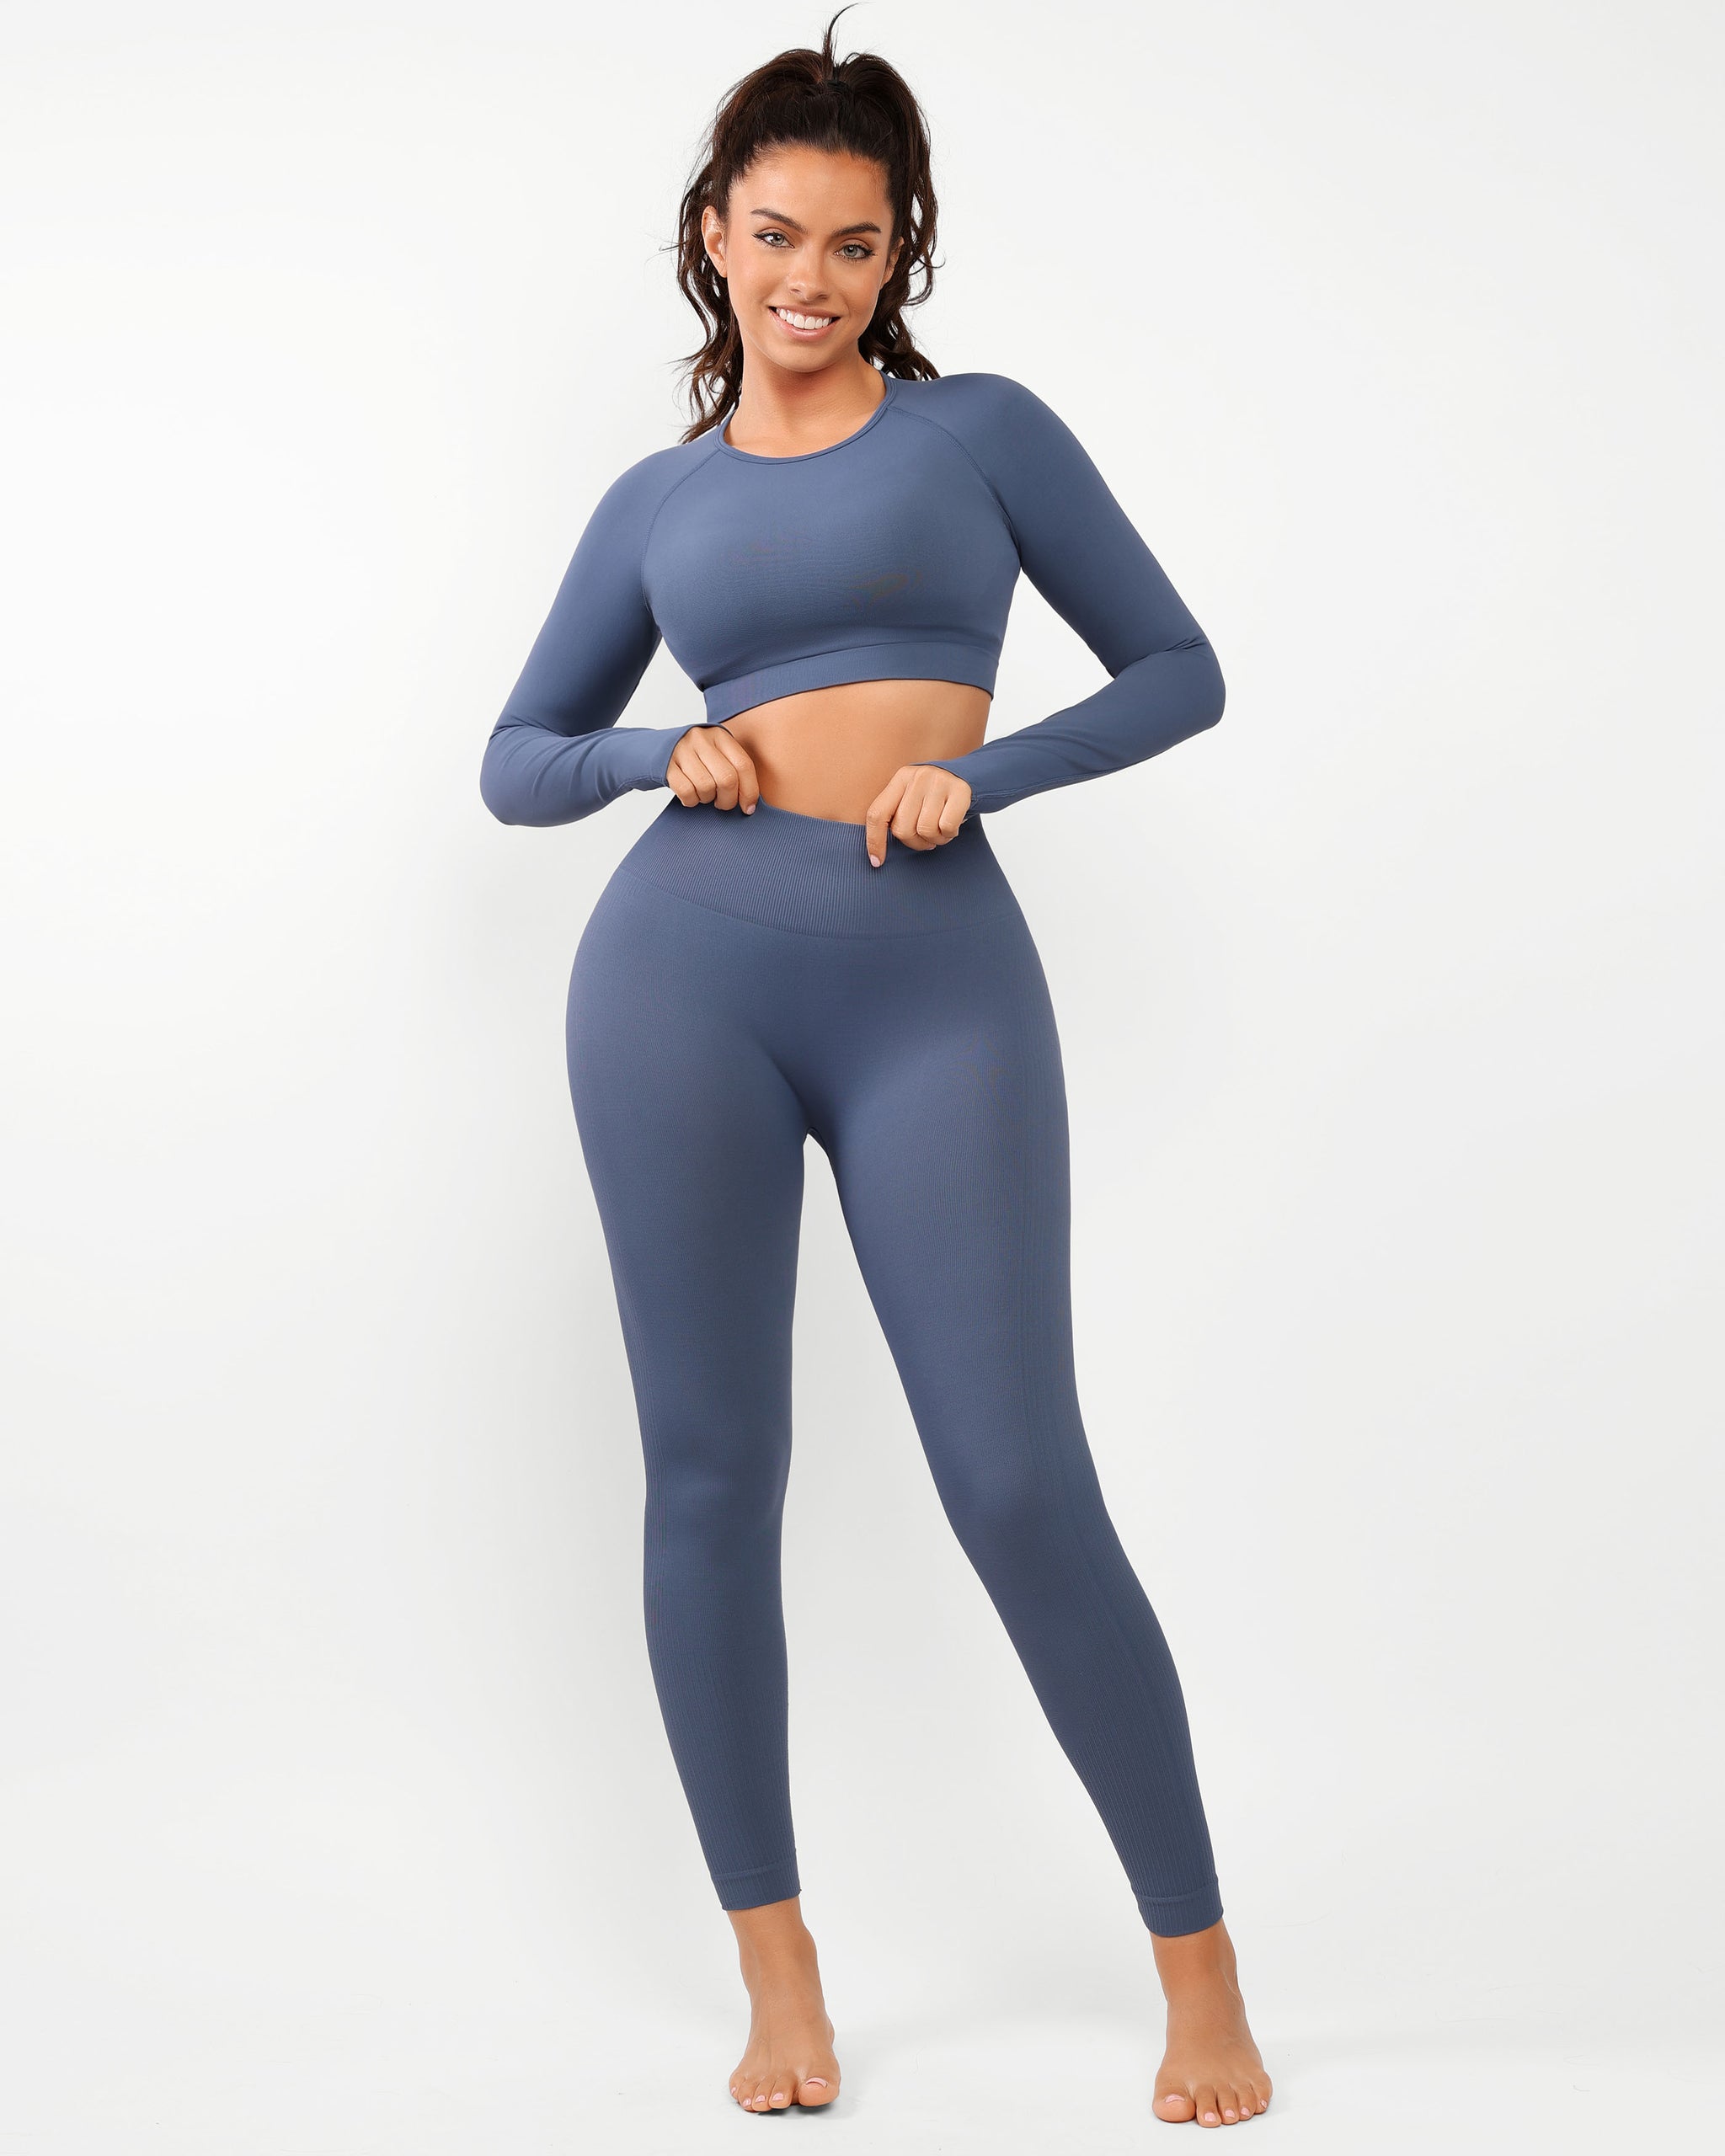 Tie Dye Seamless Plus Size Women's Leggings Yoga Pants Fitness Clothing  L-3XL